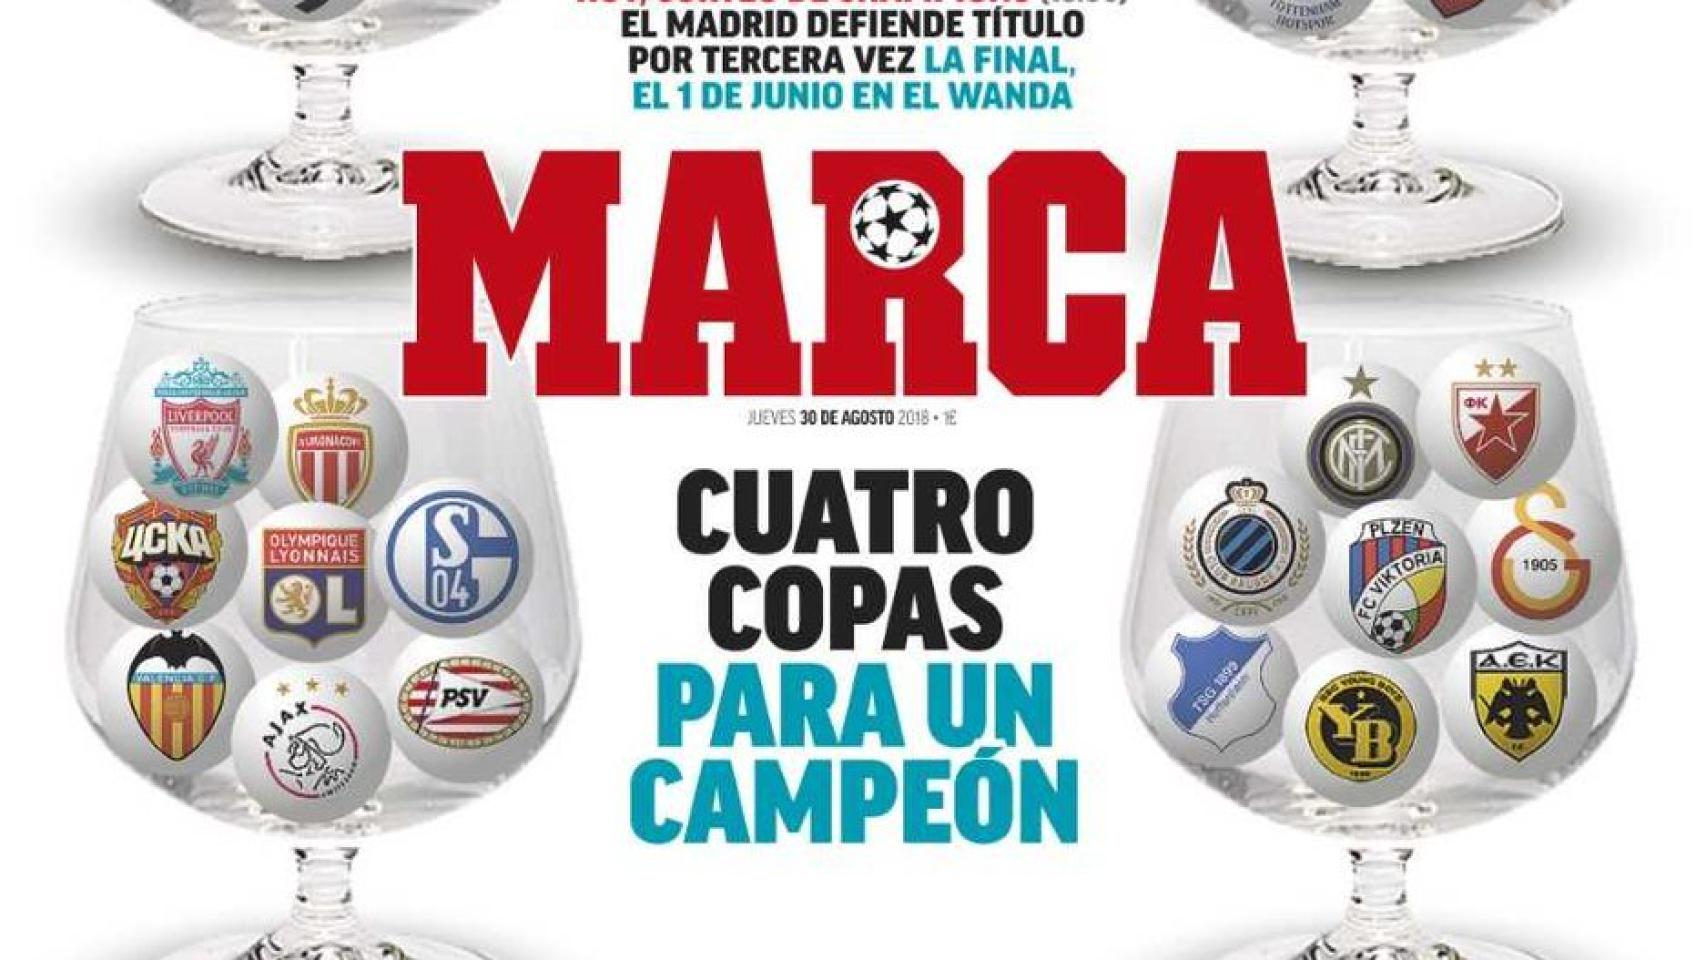 La portada del diario Marca (30/08/2018)